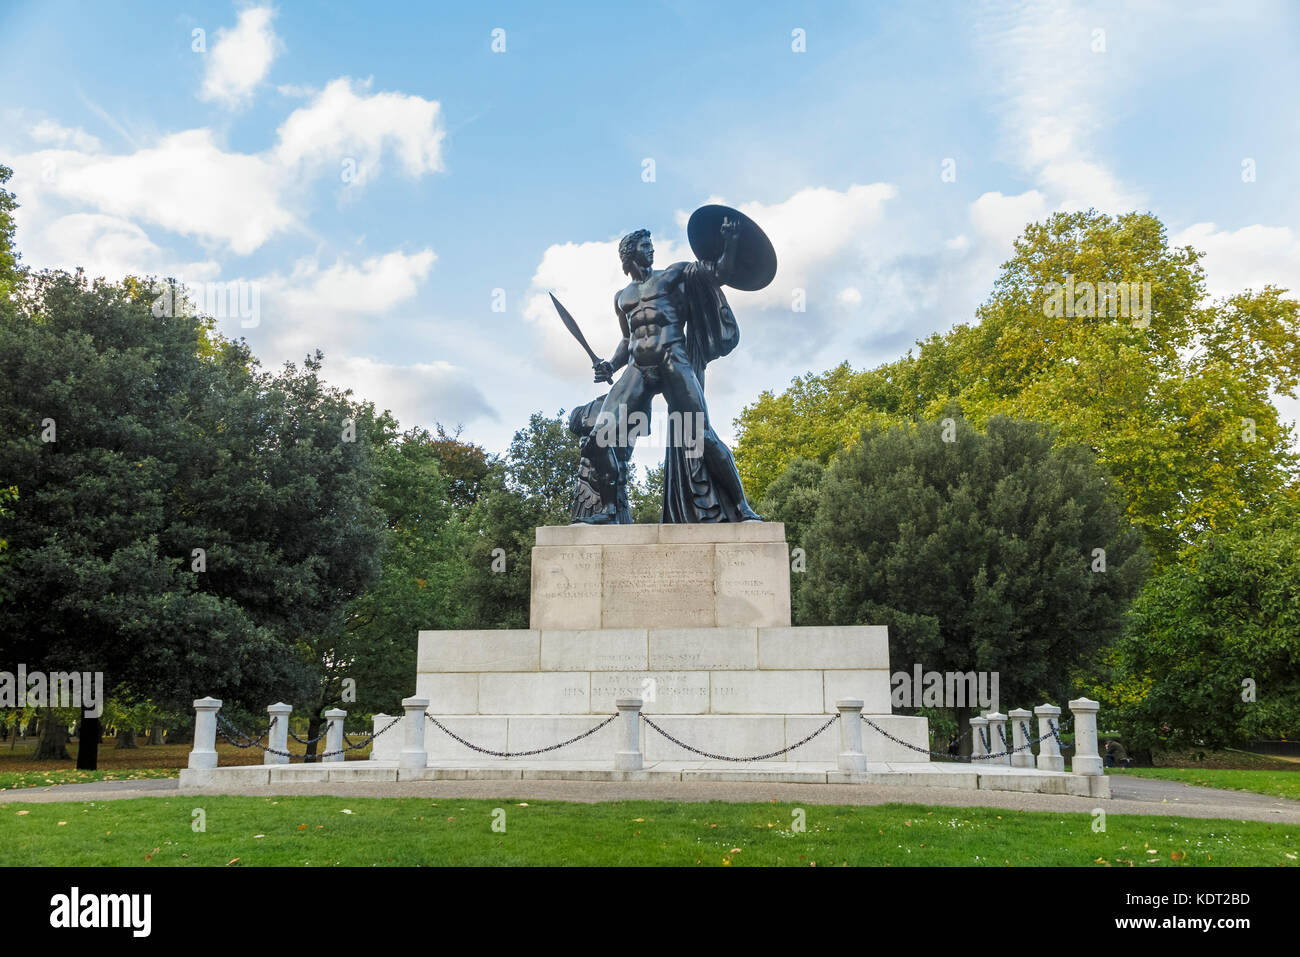 Vista de la gran estatua de bronce de Aquiles en Hyde Park, Londres W1 erigida en honor de Arthur Wellesley, primer duque de Wellington, inscripción sobre zócalo Foto de stock